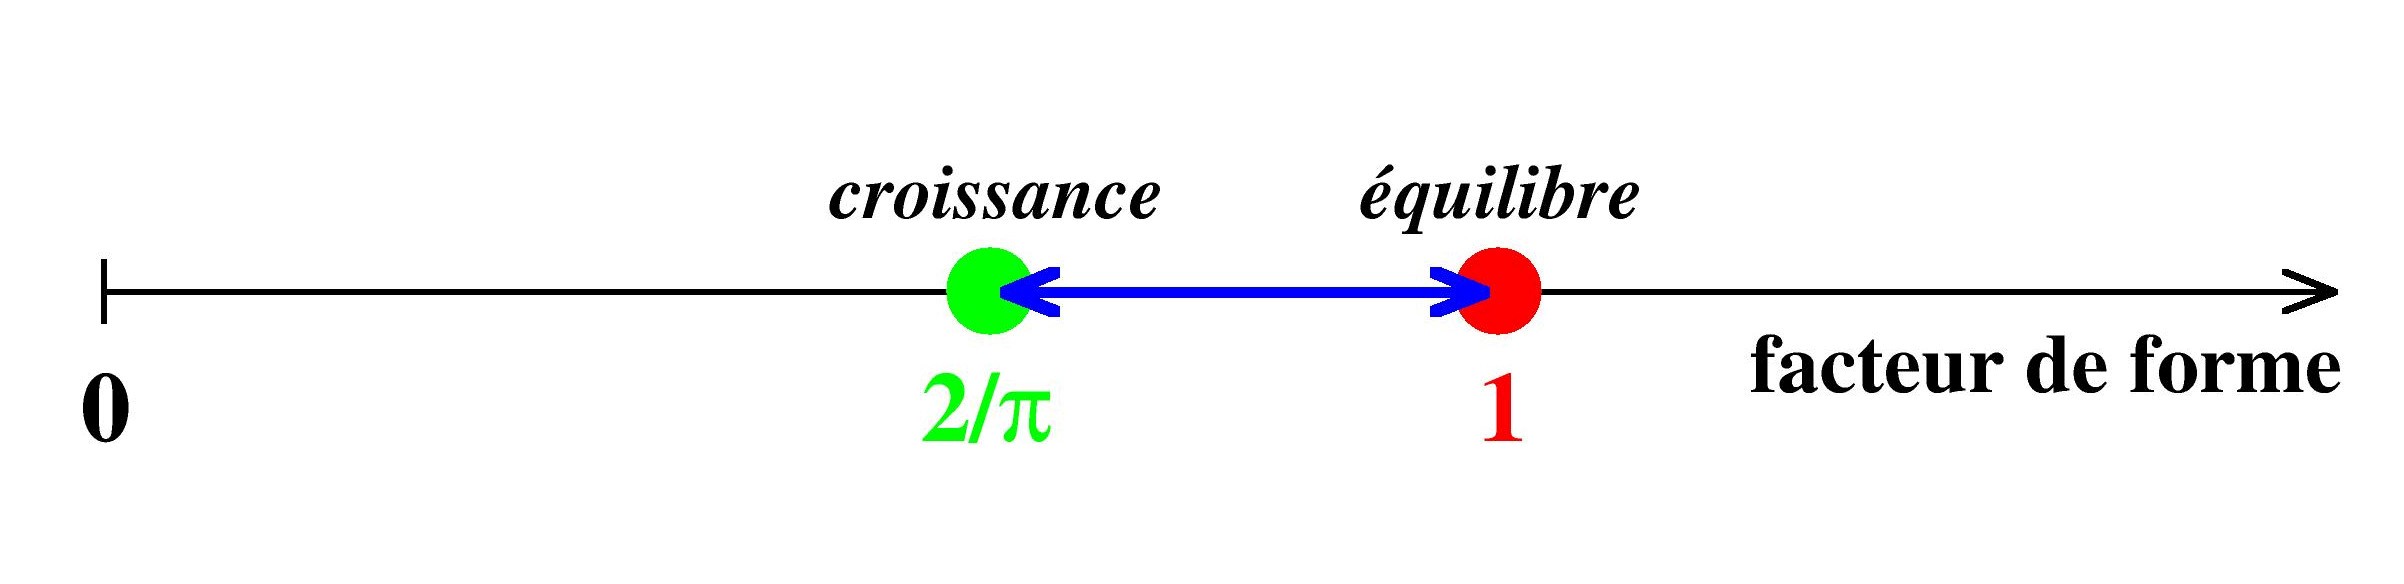 Légende : Le facteur de forme (produit de la densité des parois de domaines et de la susceptibilité magnétique) est un nouvel outil pour mesurer la distance à l'équilibre. Point rouge : équilibre thermique. Point vert : croissance après une trempe instantanée. Intervalle bleu : domaine de variation pour des trempes infiniment lentes. Crédit : C. Godrèche et J.-M. Luck